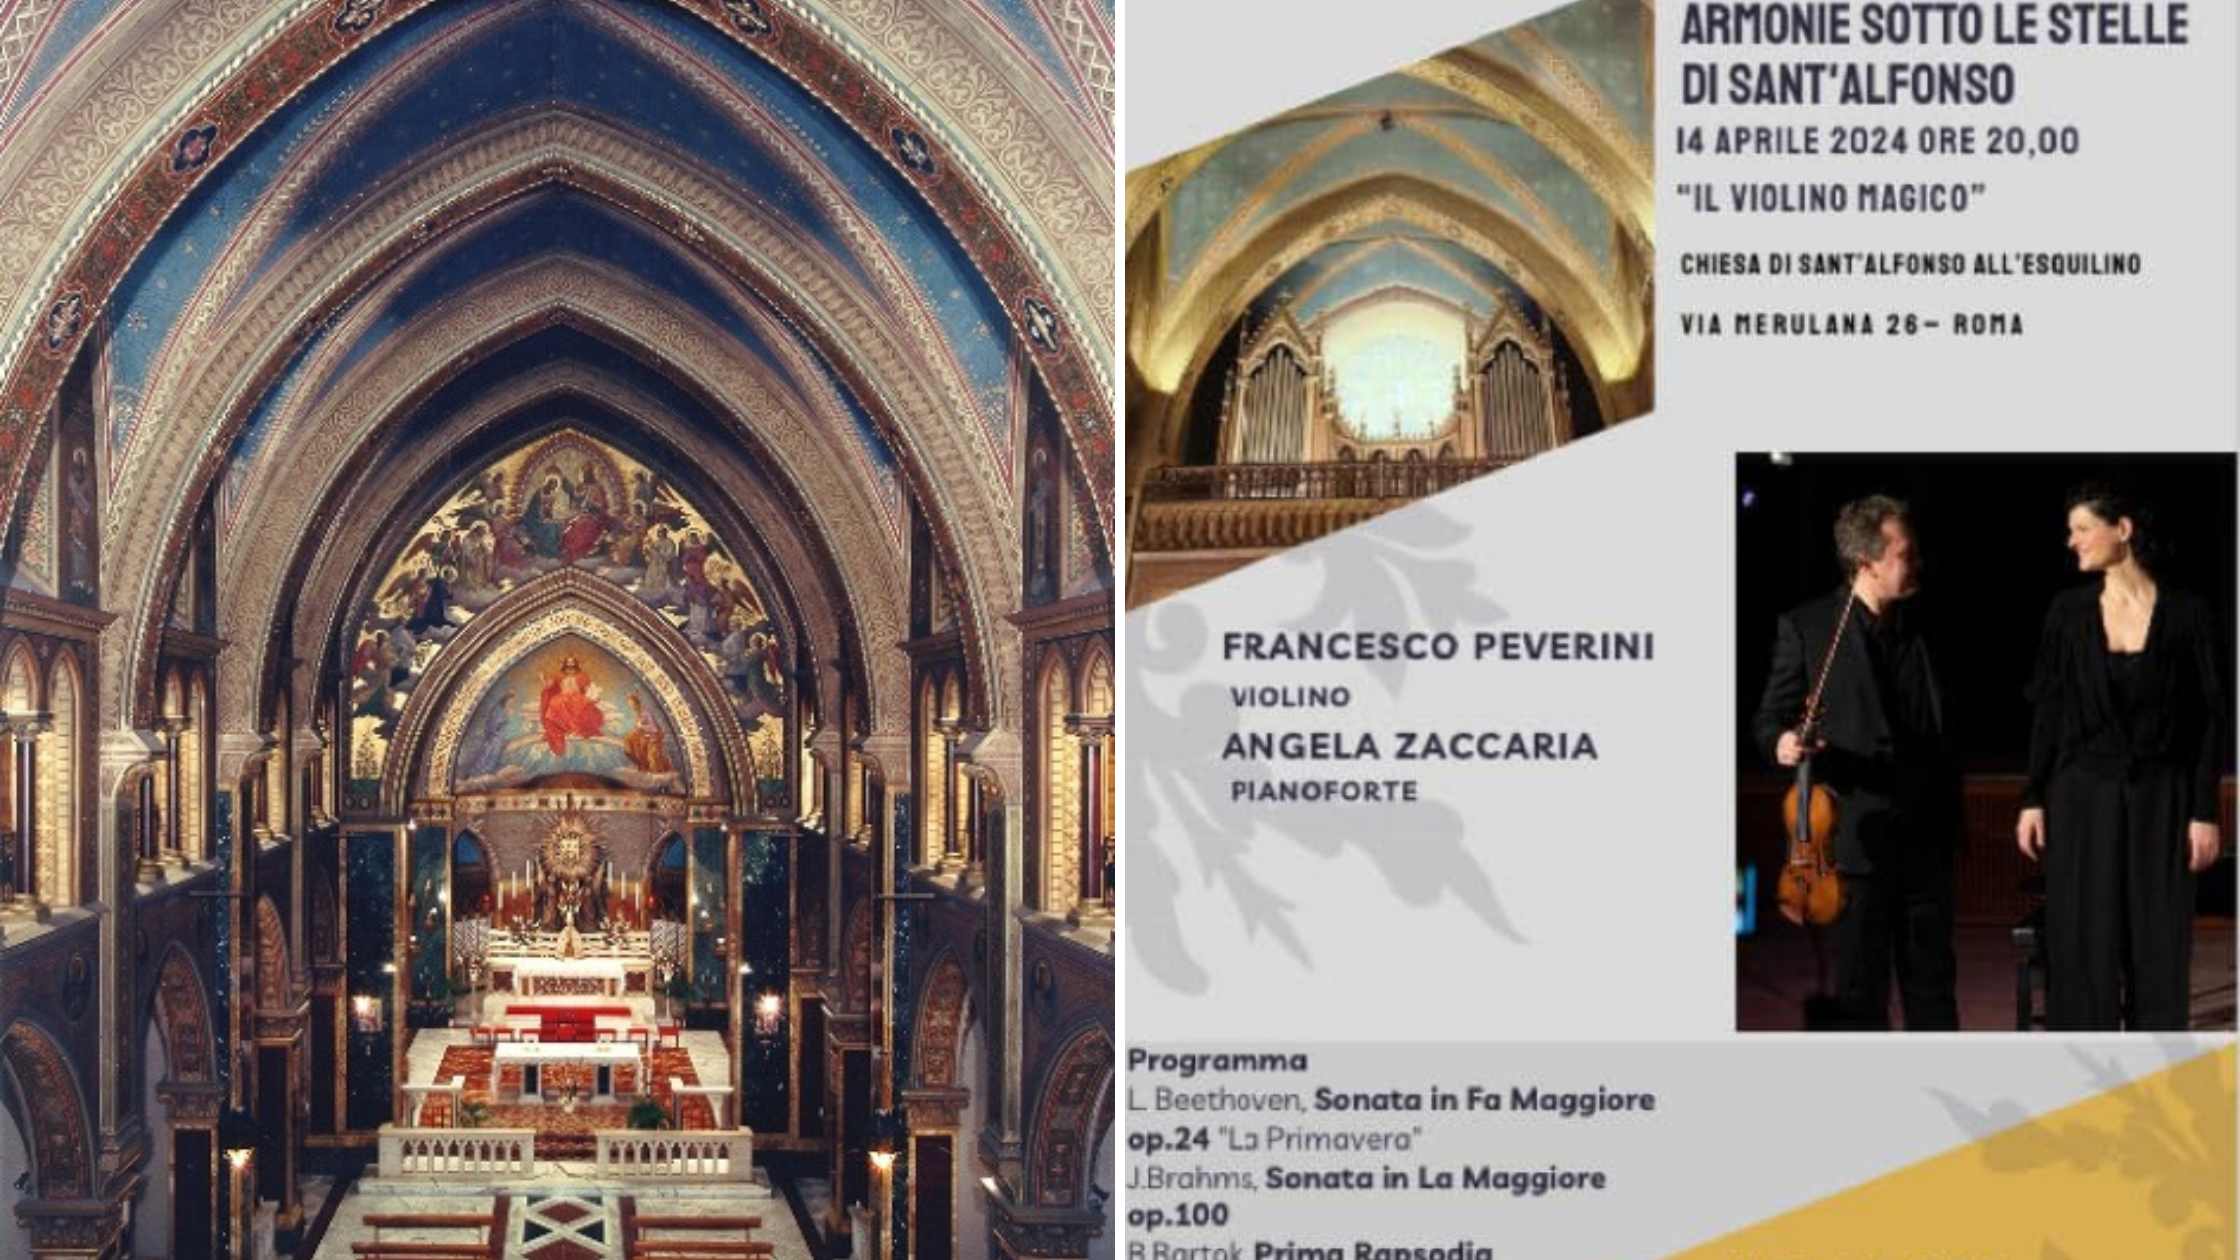 14/4/24 “Il violino magico” Concerto di Francesco Peverini (violino) e Angela Zaccaria (pianoforte)  presso la chiesa di Sant’Alfonso